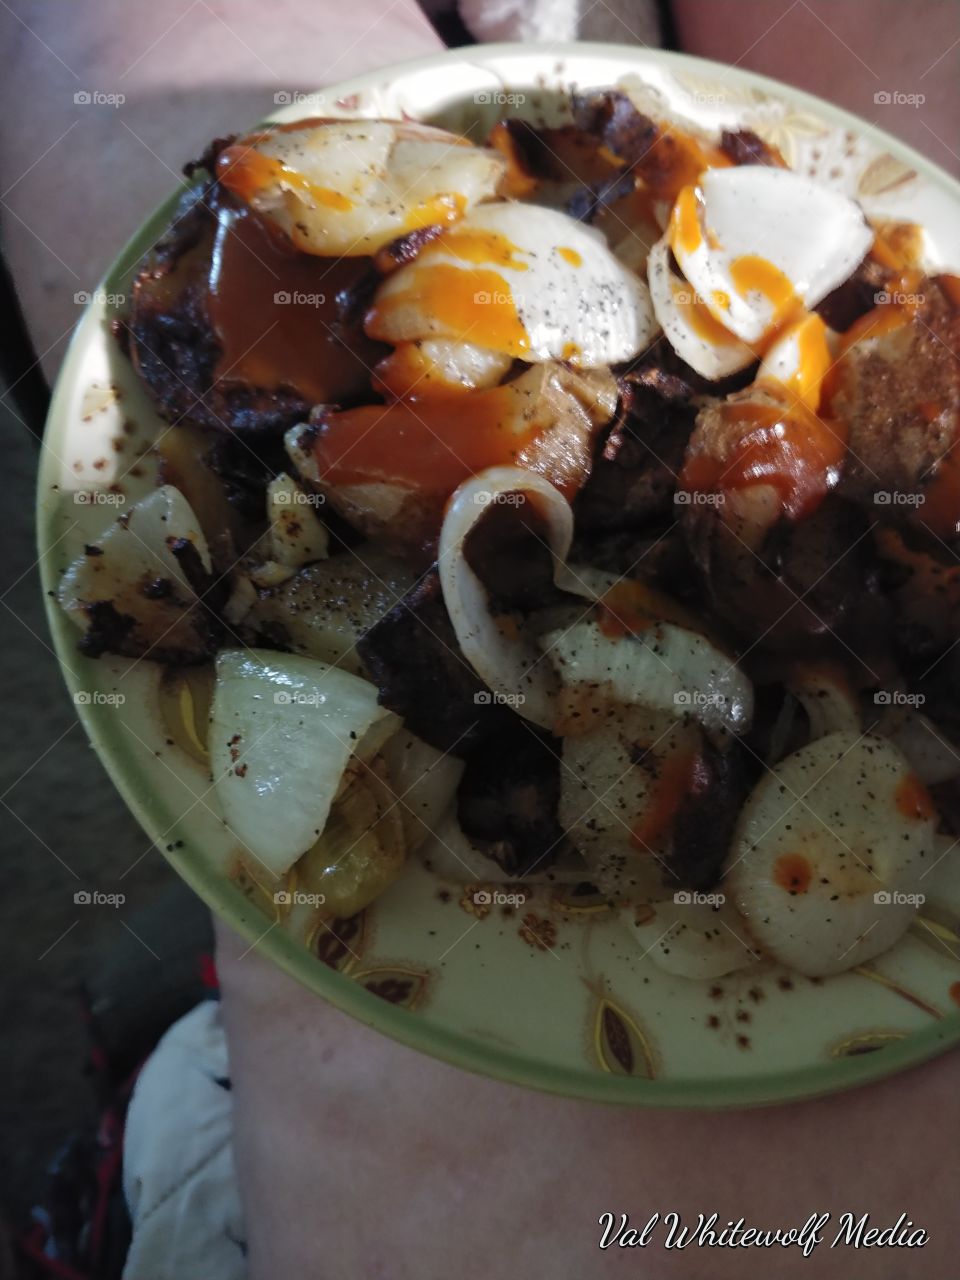 dark shade potato onion plate breakfast still life